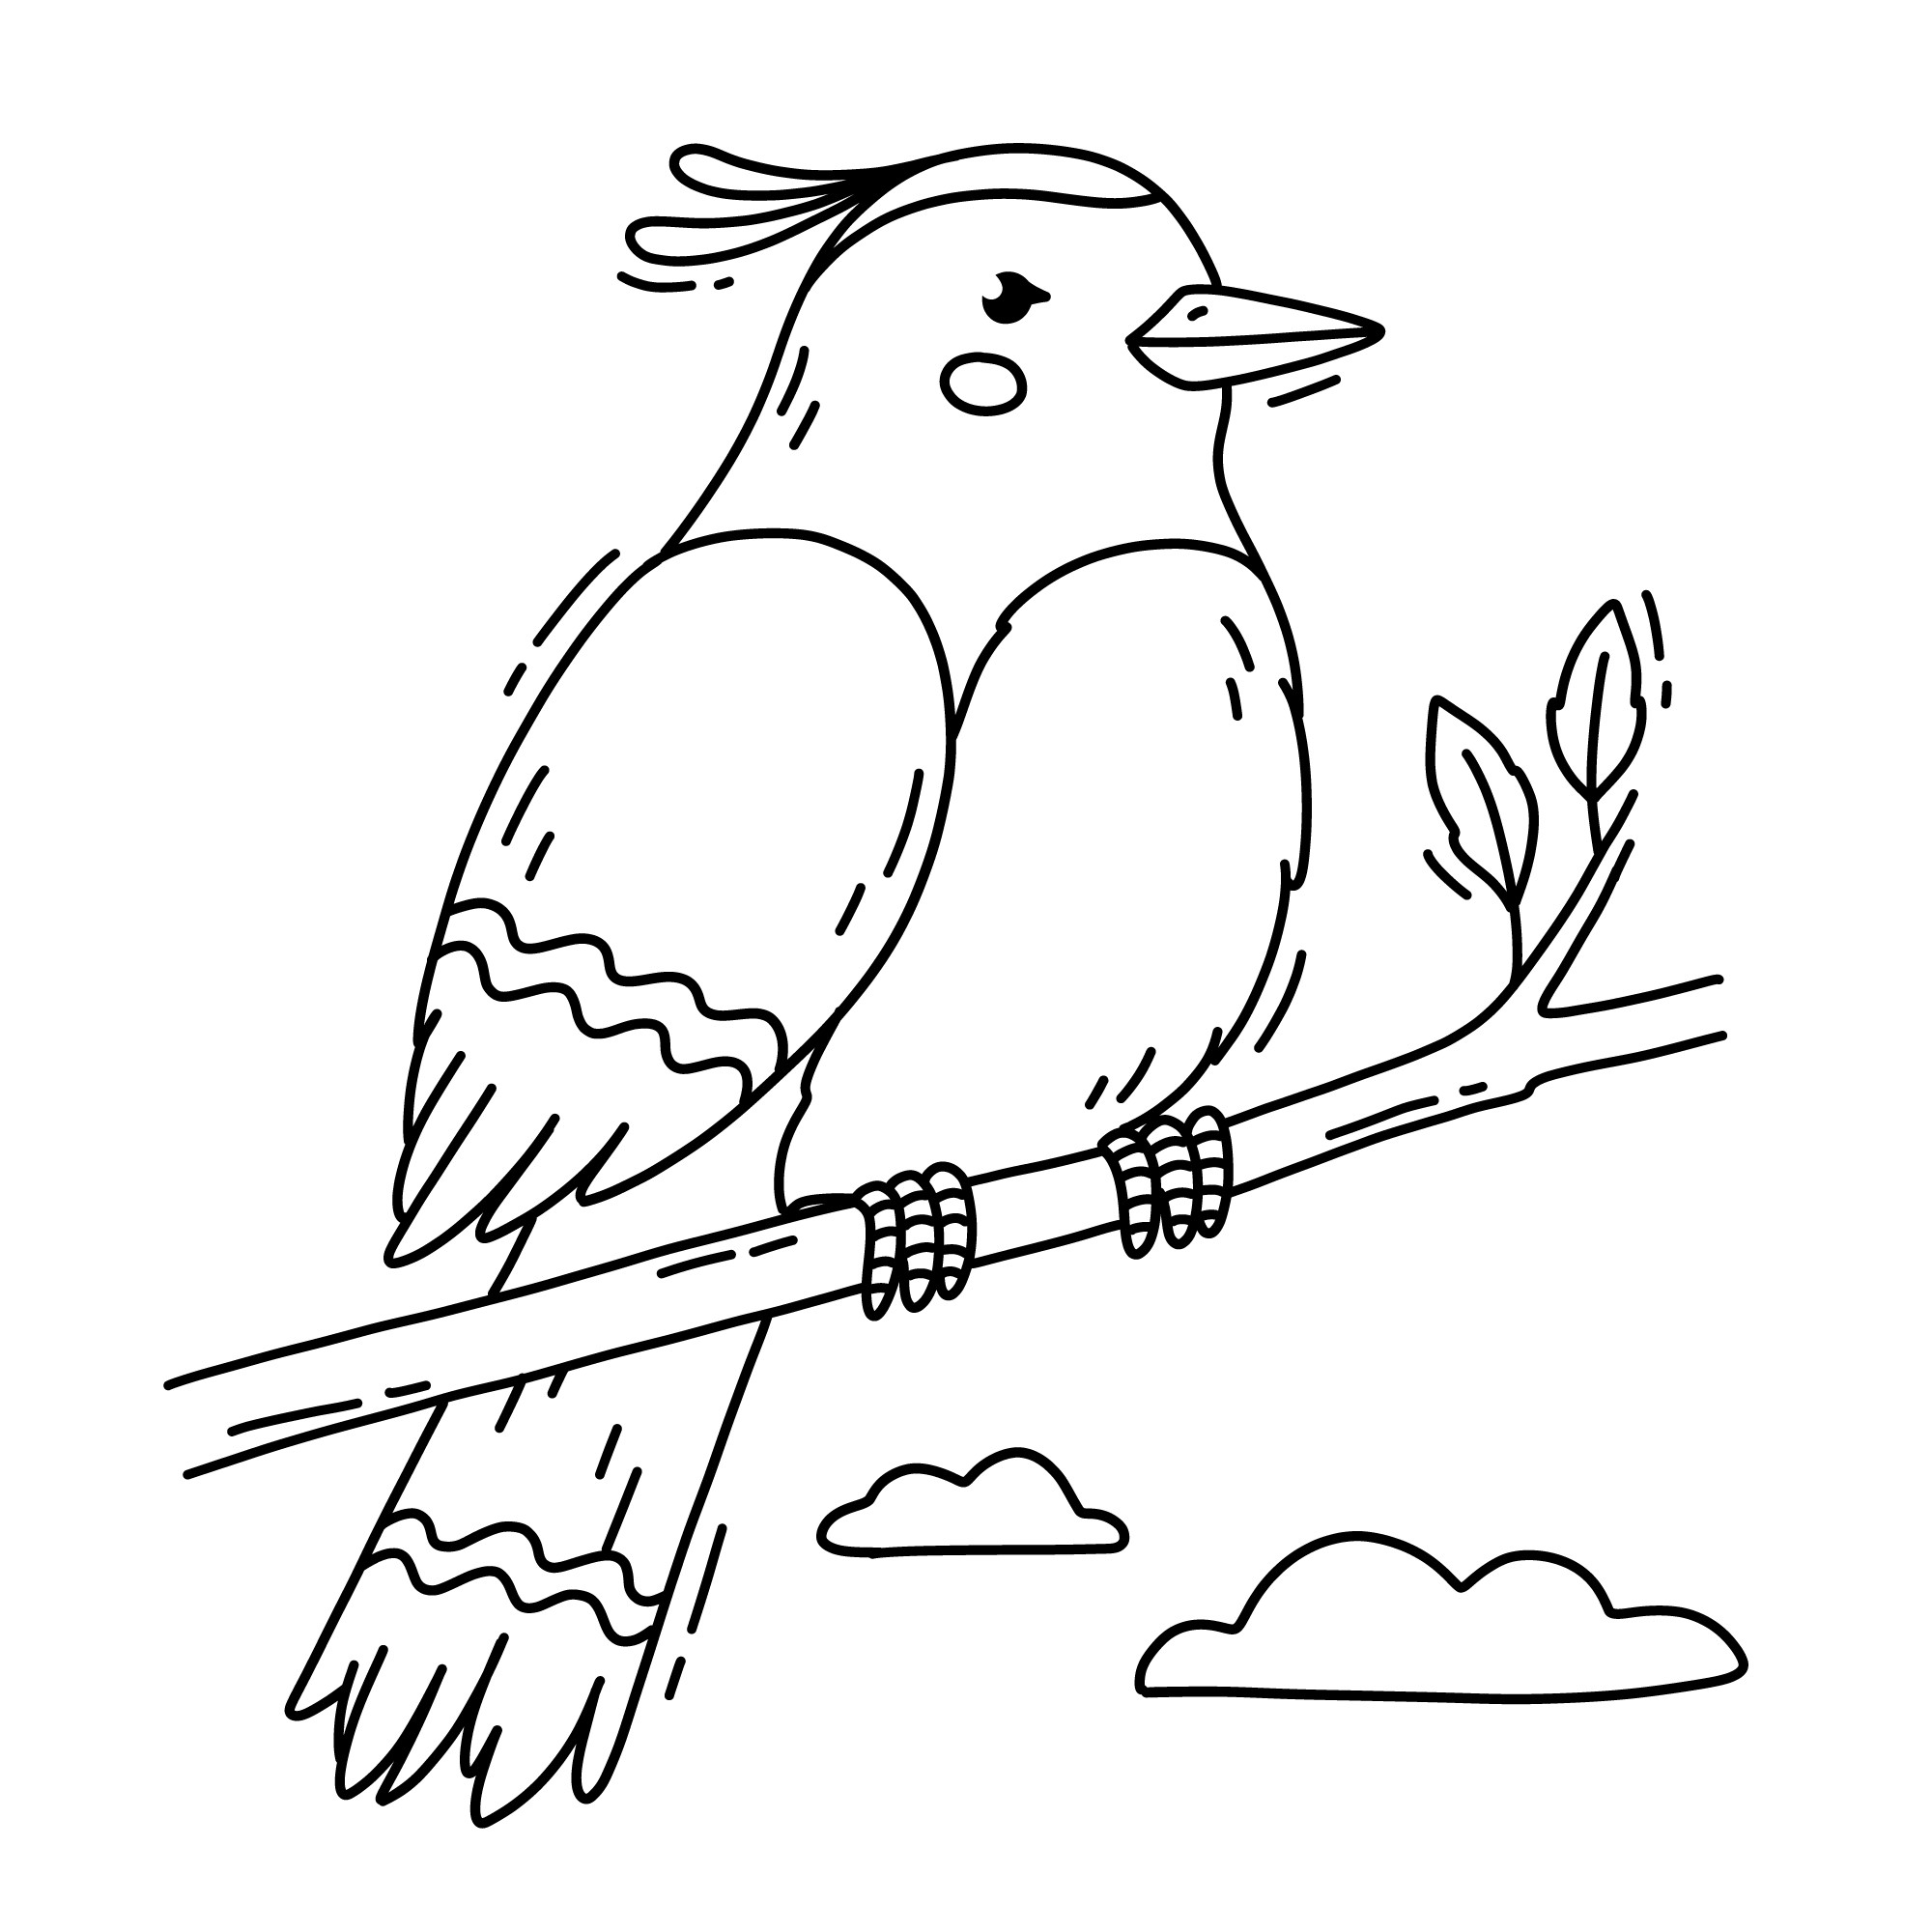 Раскраска для детей: птица на ветке «Пернатый бриз»